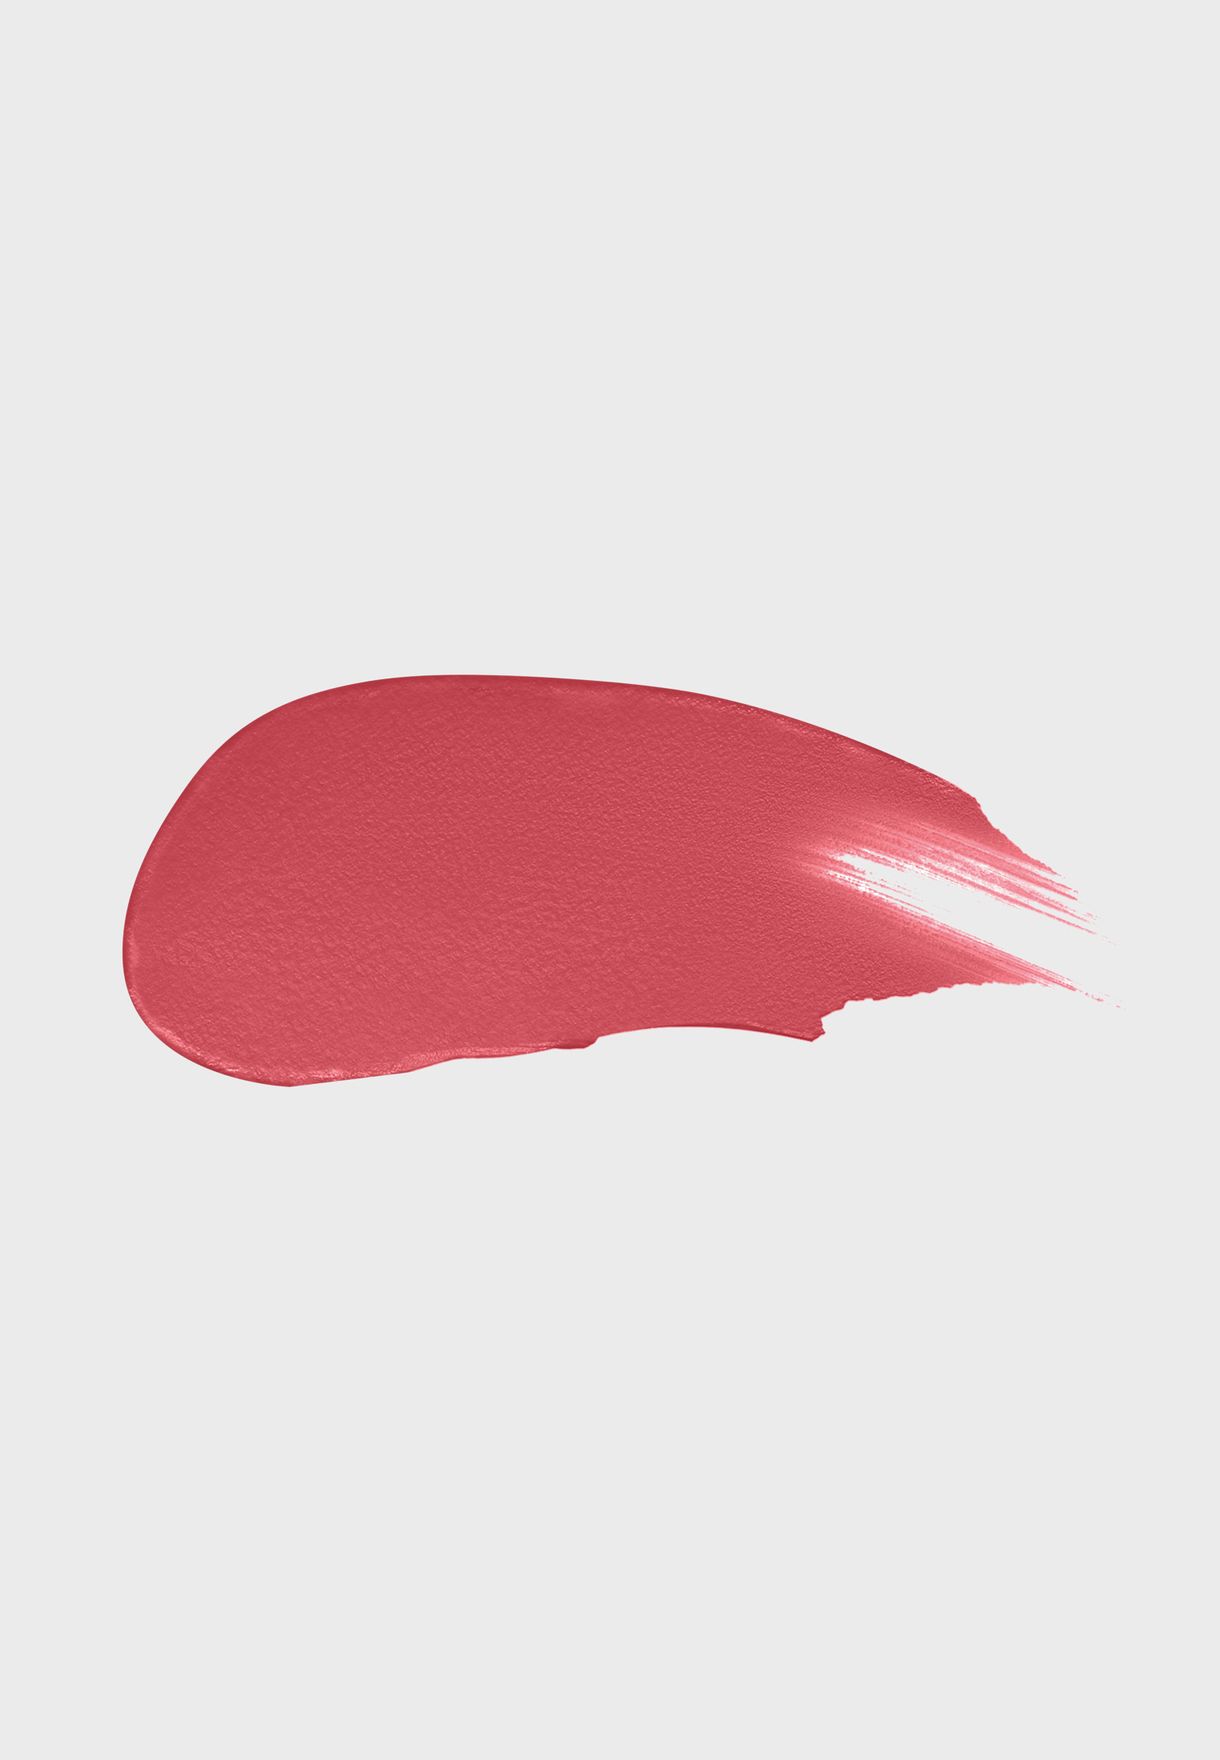 Colour Elixir Soft Matte Lipstick 015 Rose Dust